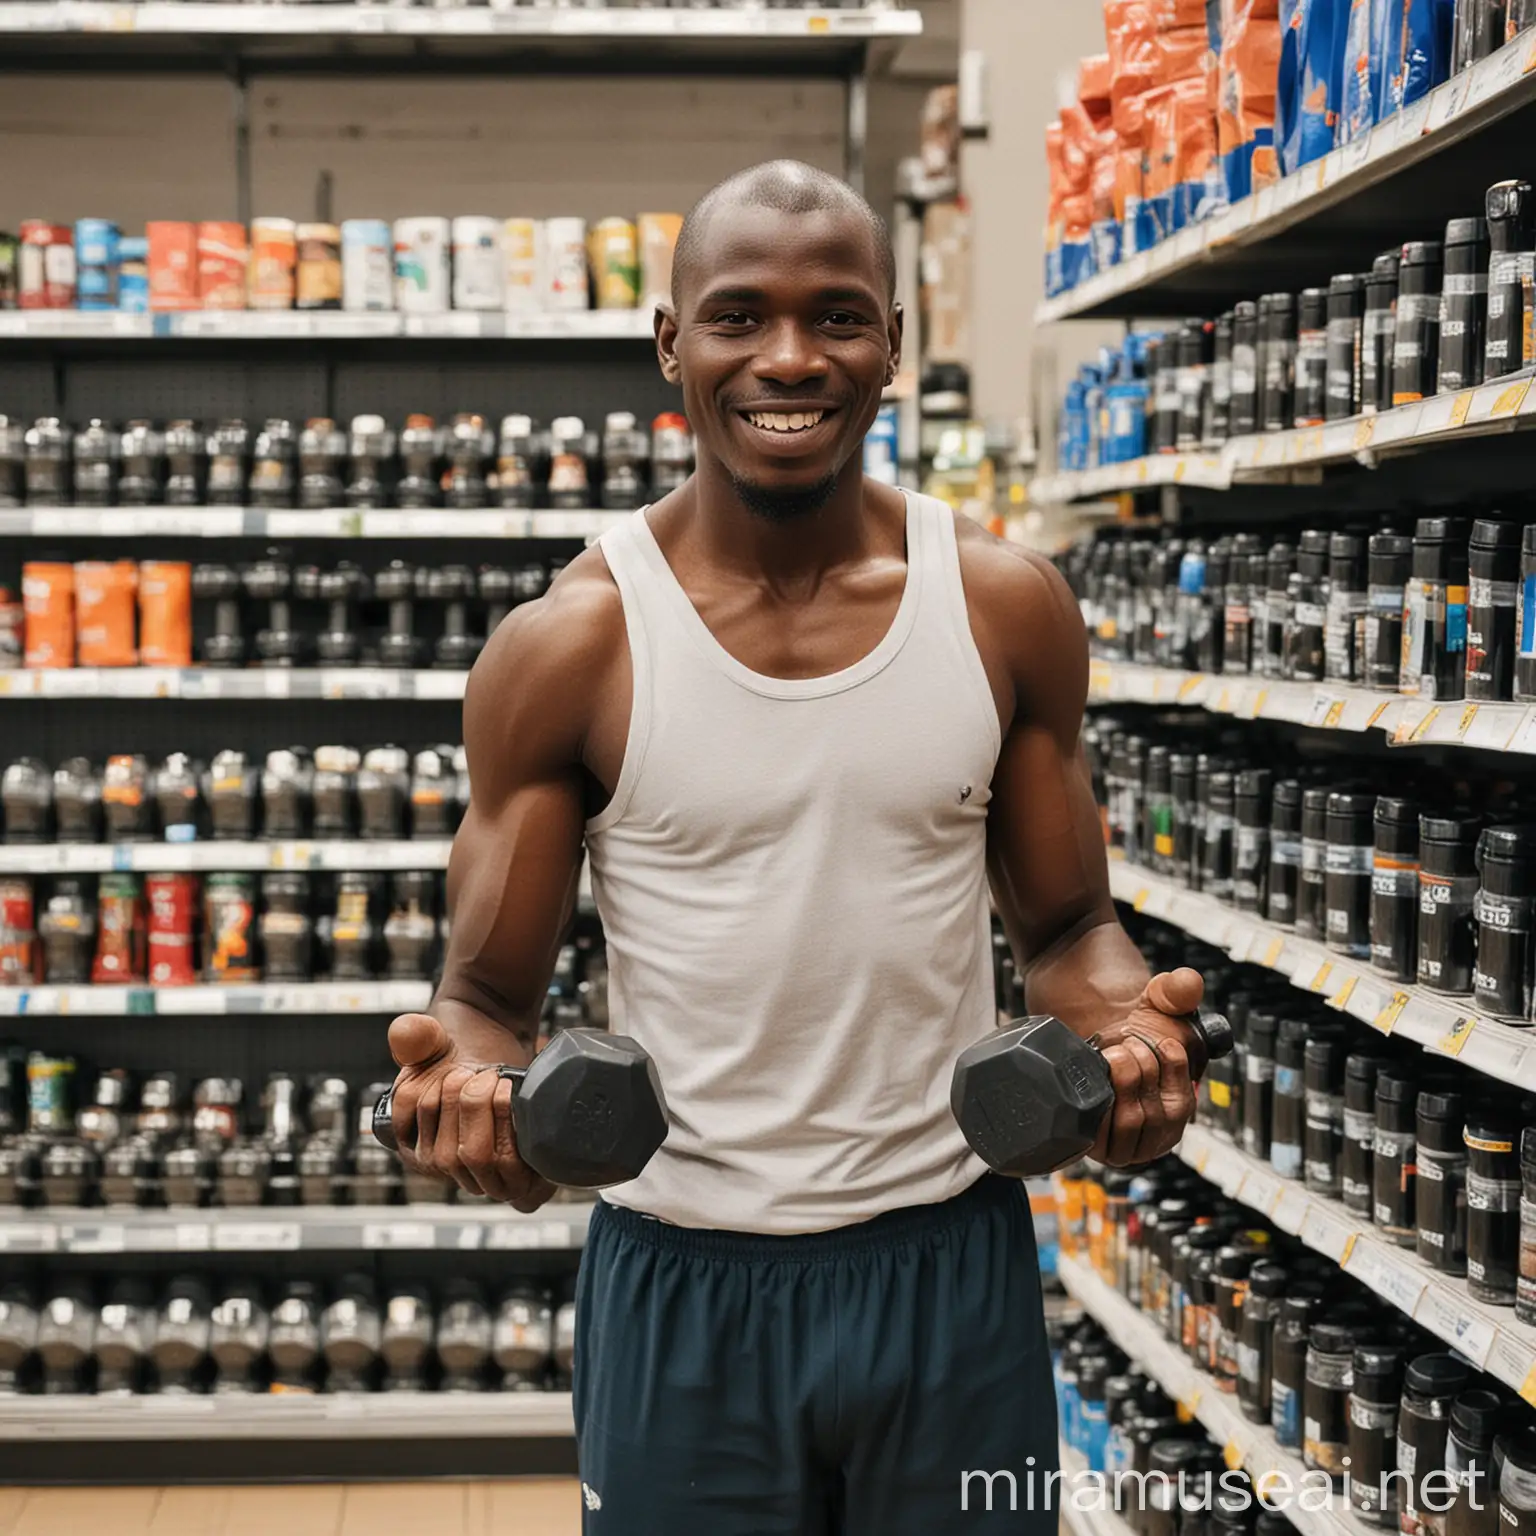 African Man Selling Dumbbells in Supermarket Fitness Equipment Retailer Scene